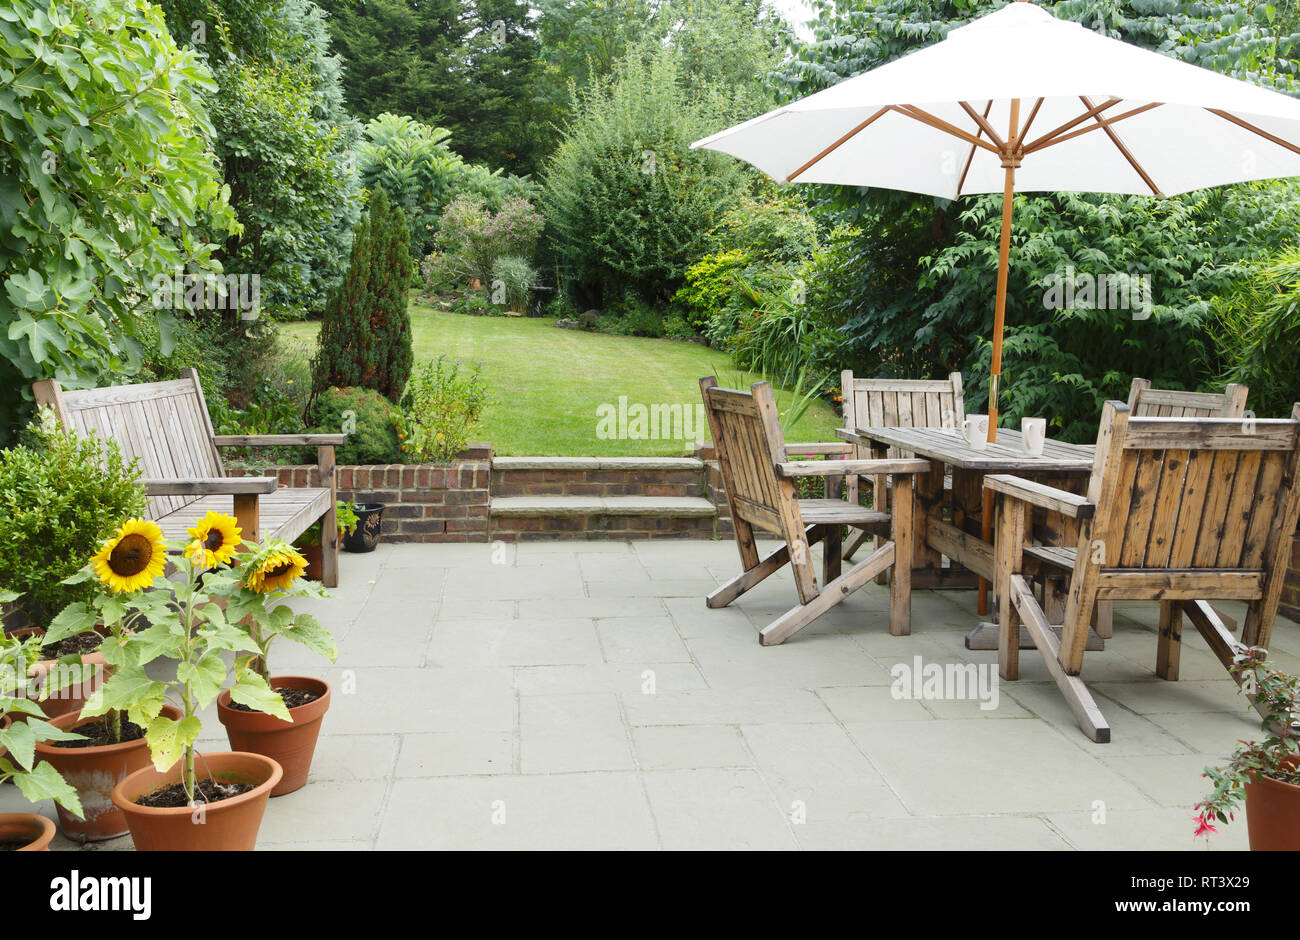 London garden in summer with patio, wooden garden furniture and a parasol or sun umbrella Stock Photo